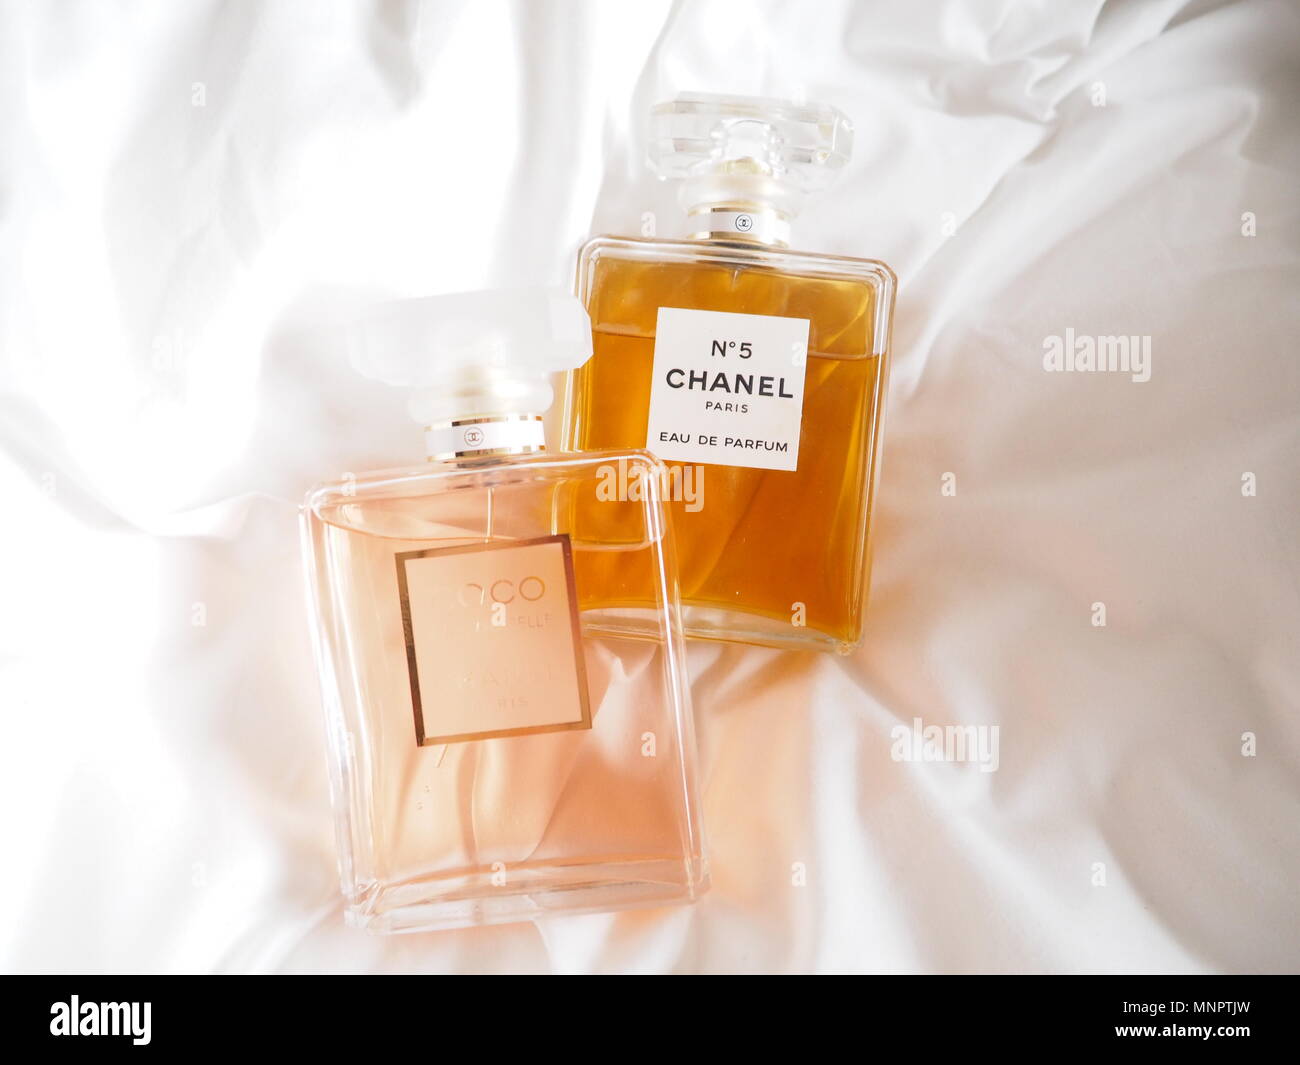 1.120 fotos e imágenes de Chanel No 5 Perfume - Getty Images